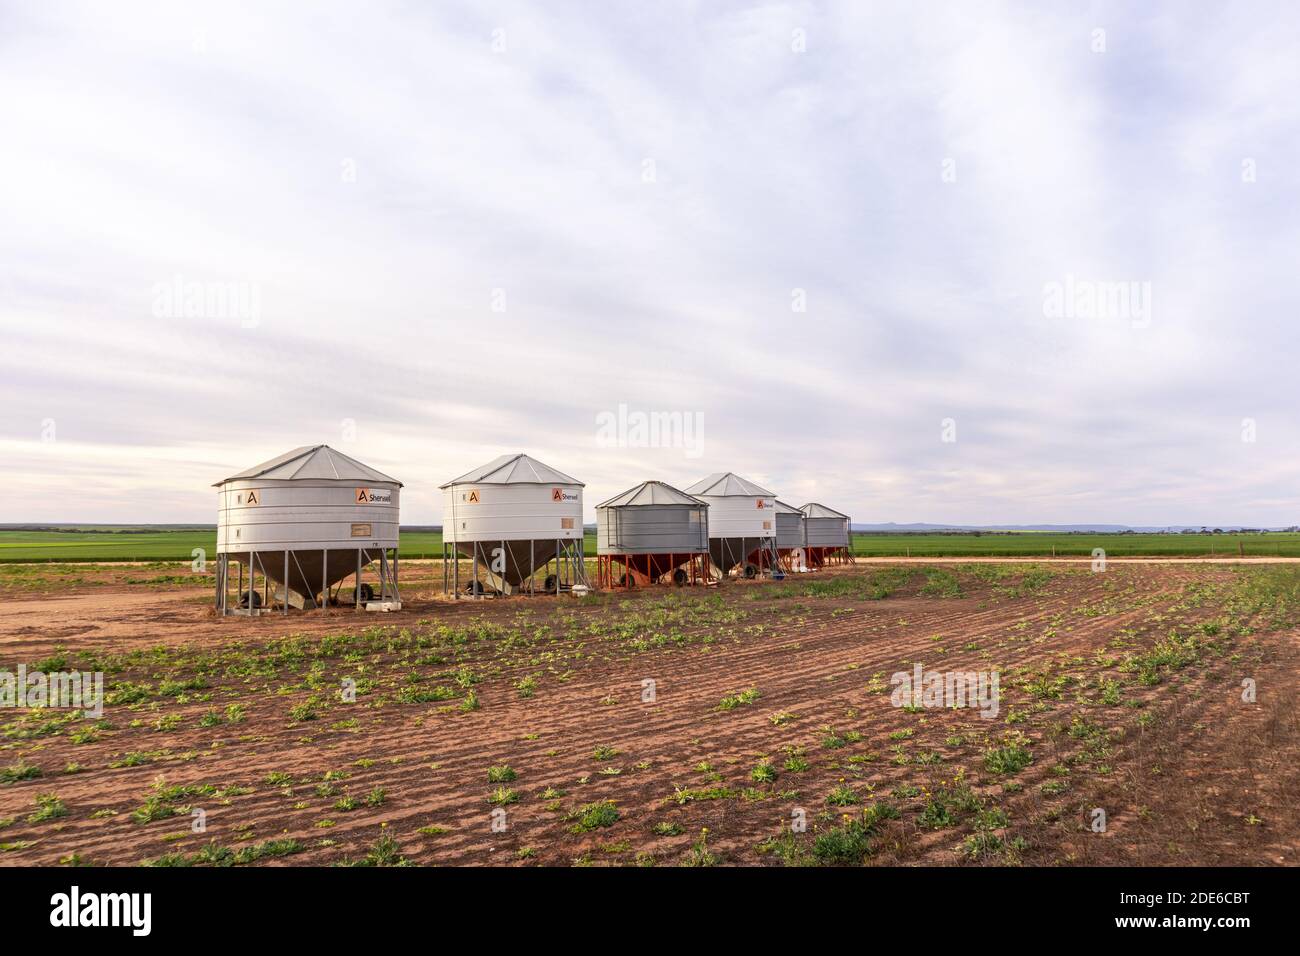 Australien; Aug 2020: Silos in einem Weizenfeld, verwendet, um Weizenkorn für landwirtschaftliche Zwecke auf dem Land zu speichern. Lagerhaus für Lebensmittelstaub Stockfoto